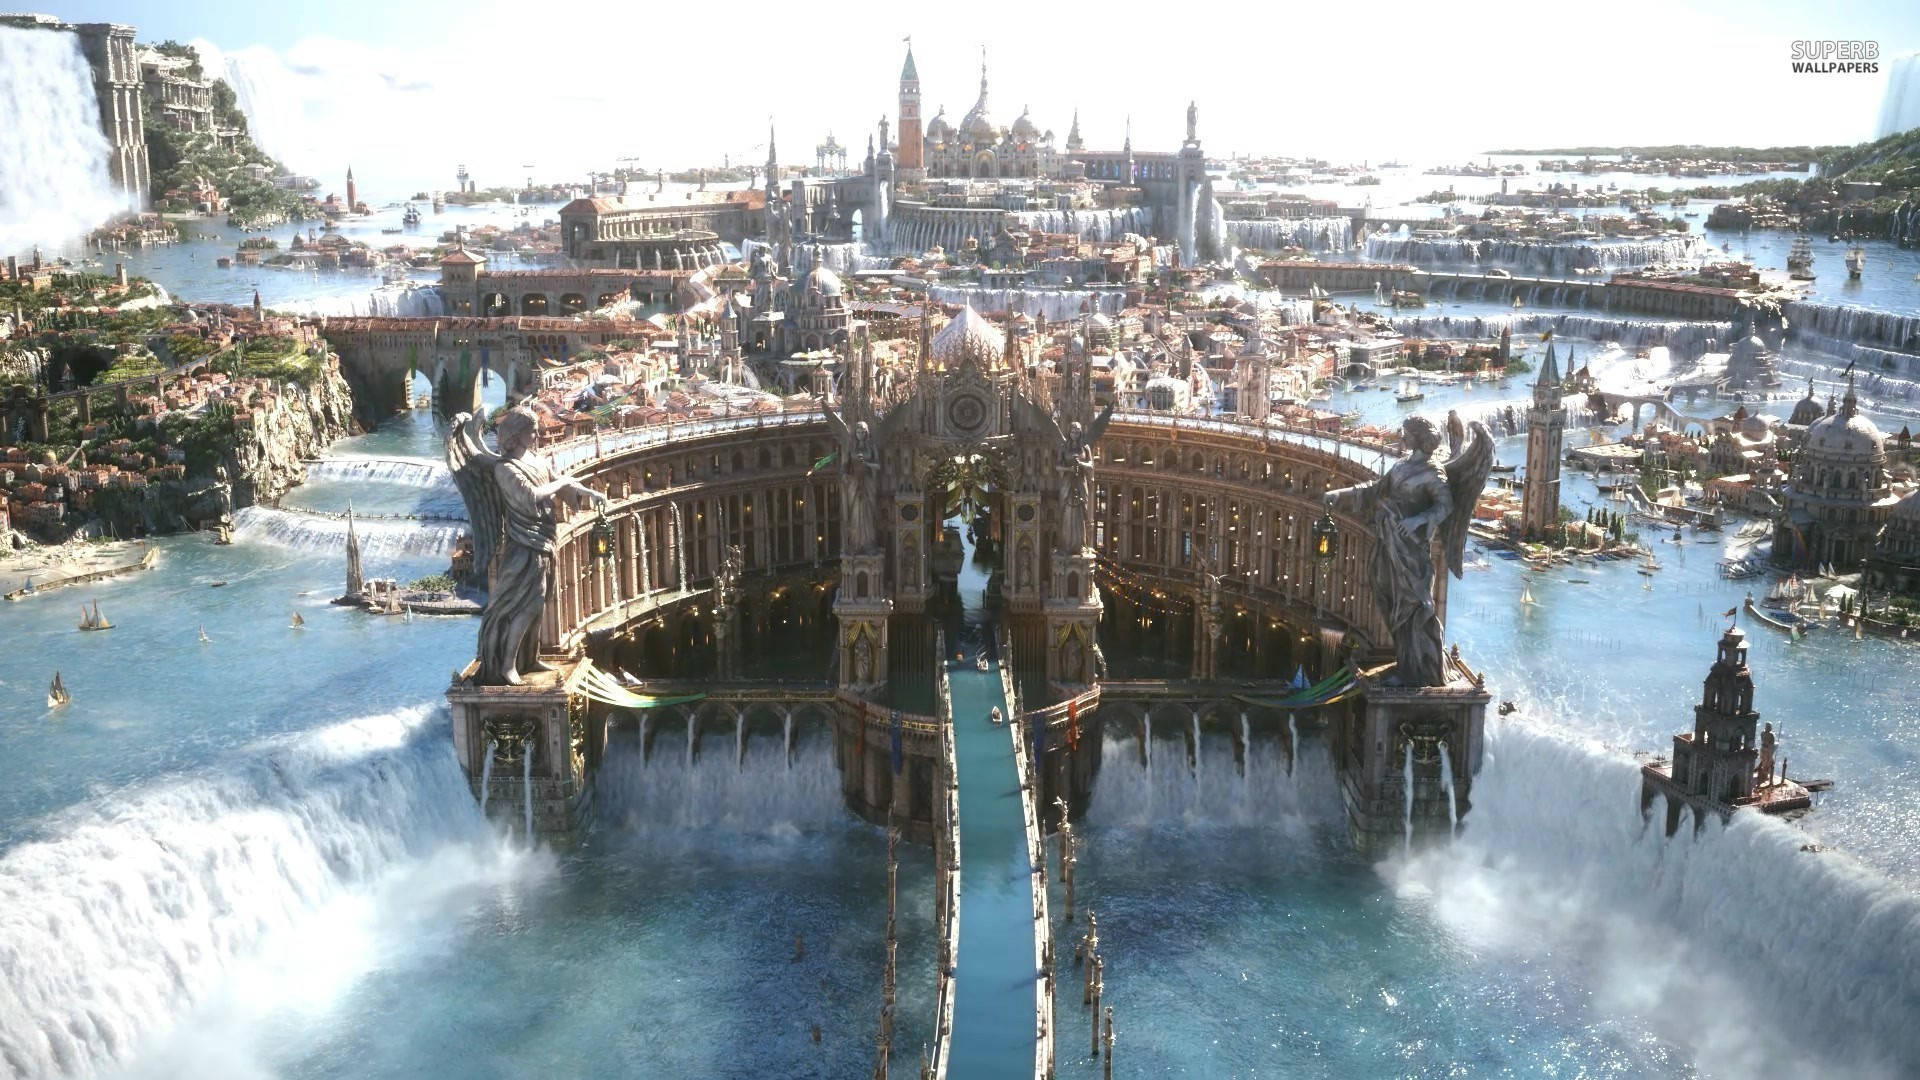 Altissia In Final Fantasy Xv Picture